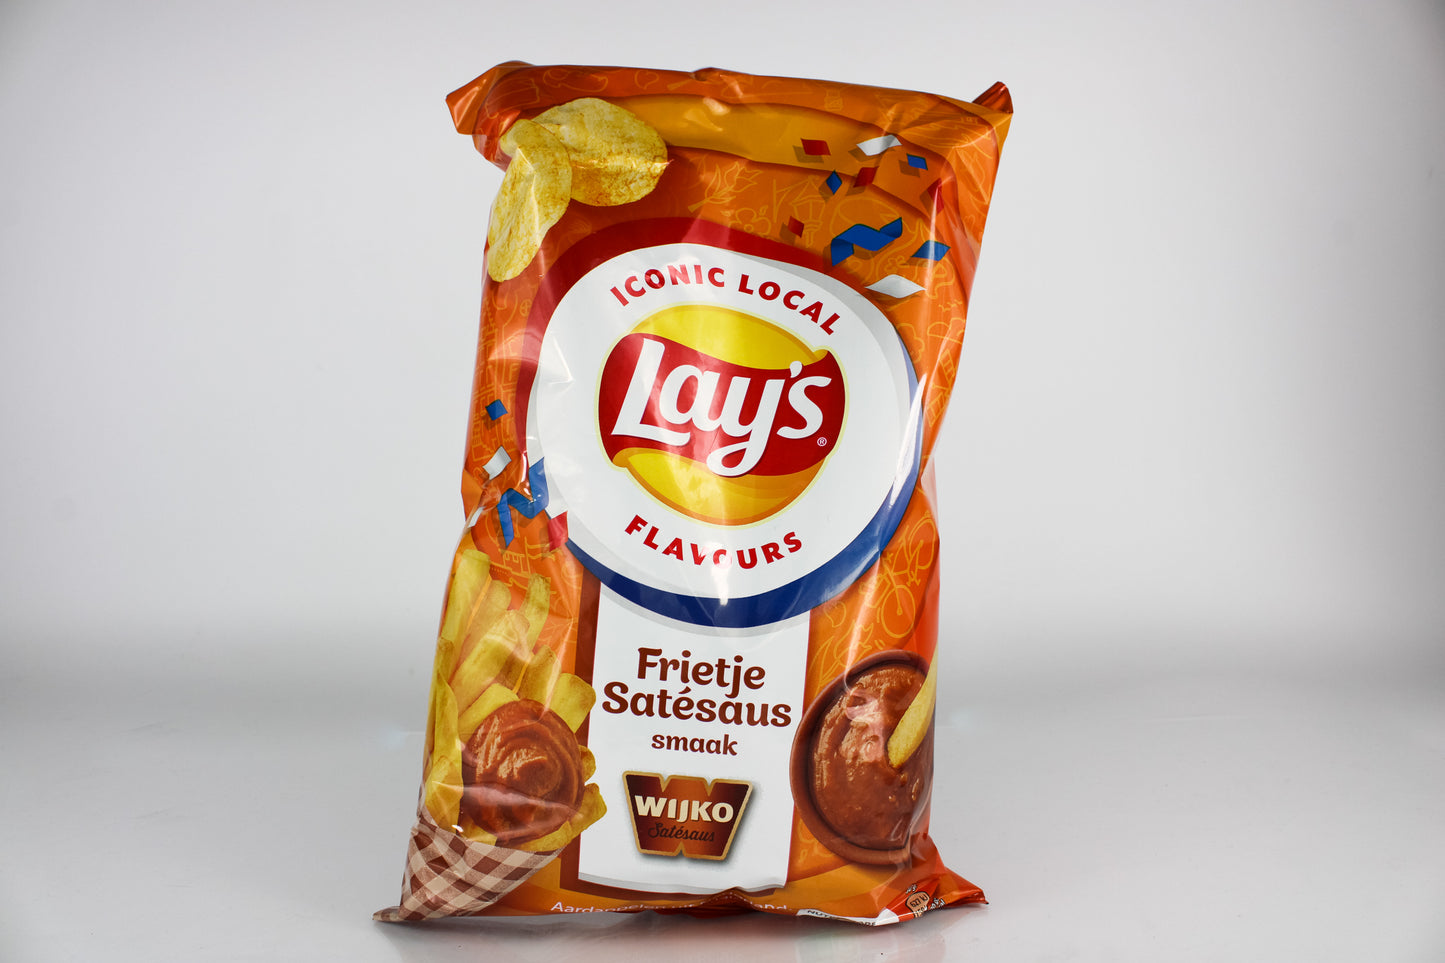 Lays Chips Frietje Satesaus (wijko)